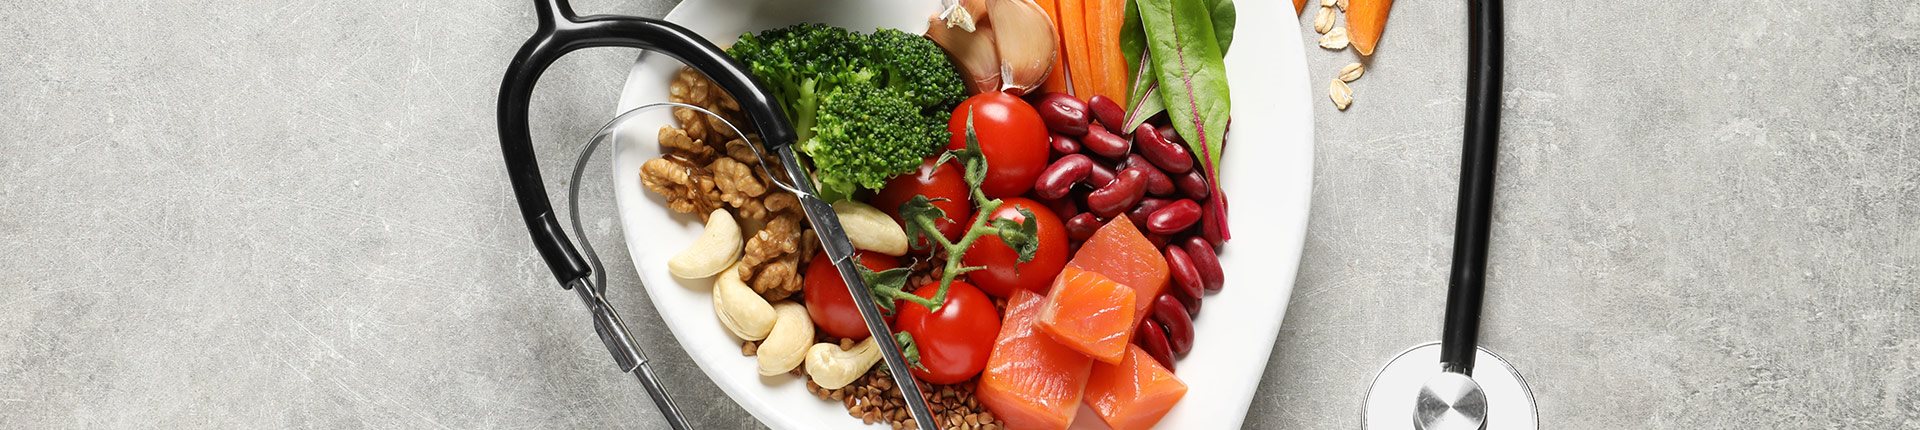 Jak obniżyć poziom cholesterolu? Dieta, profilaktyka i suplementy na niski cholesterol